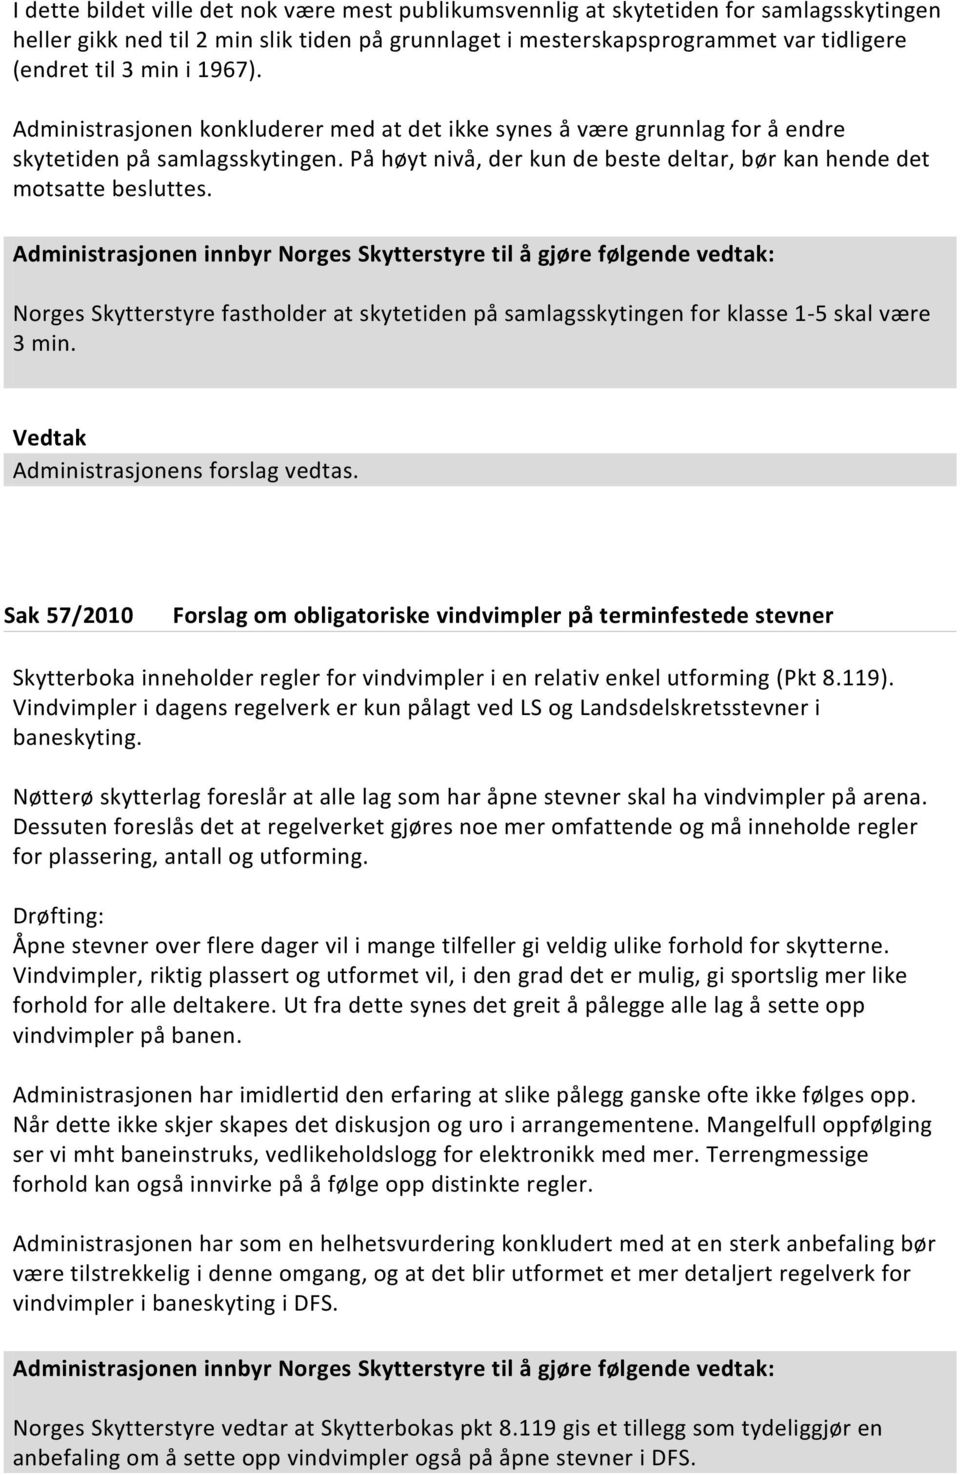 Norges Skytterstyre fastholder at skytetiden på samlagsskytingen for klasse 1-5 skal være 3 min. Administrasjonens forslag vedtas.